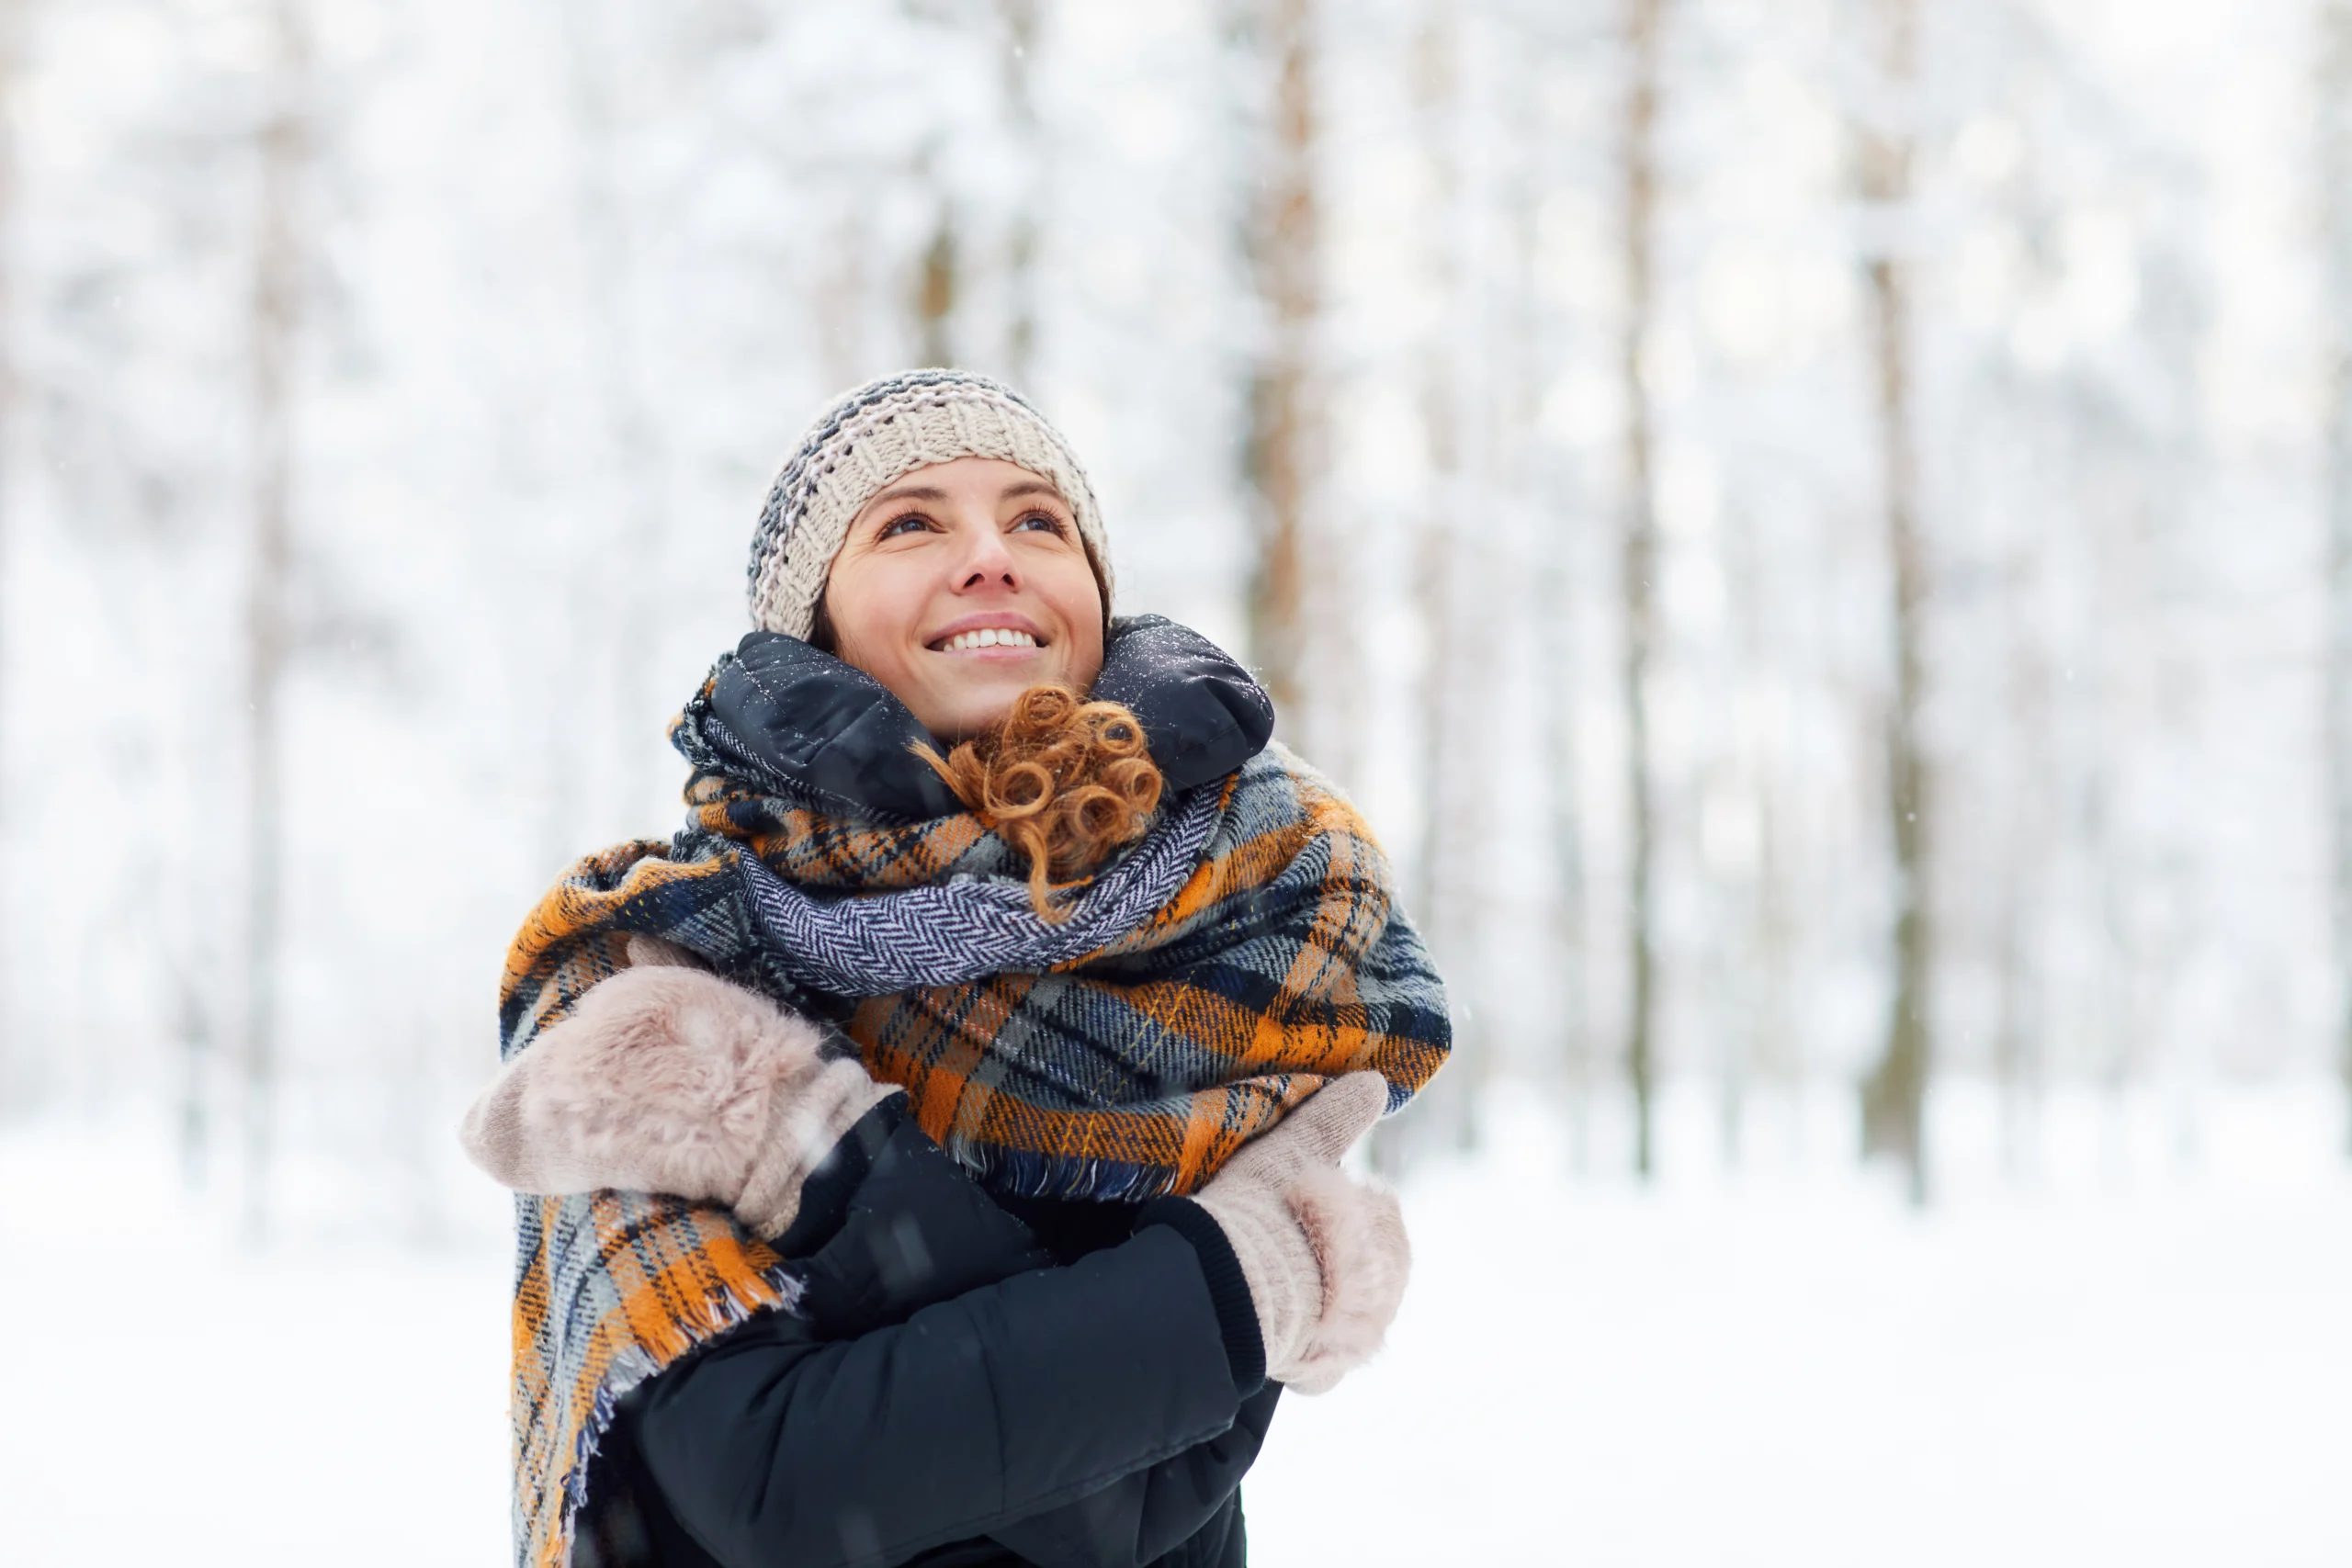 Naturalne sposoby na odporność. Kobieta w czapce i rękawiczkach otula się szalikiem, stojąc w lesie na śniegu.